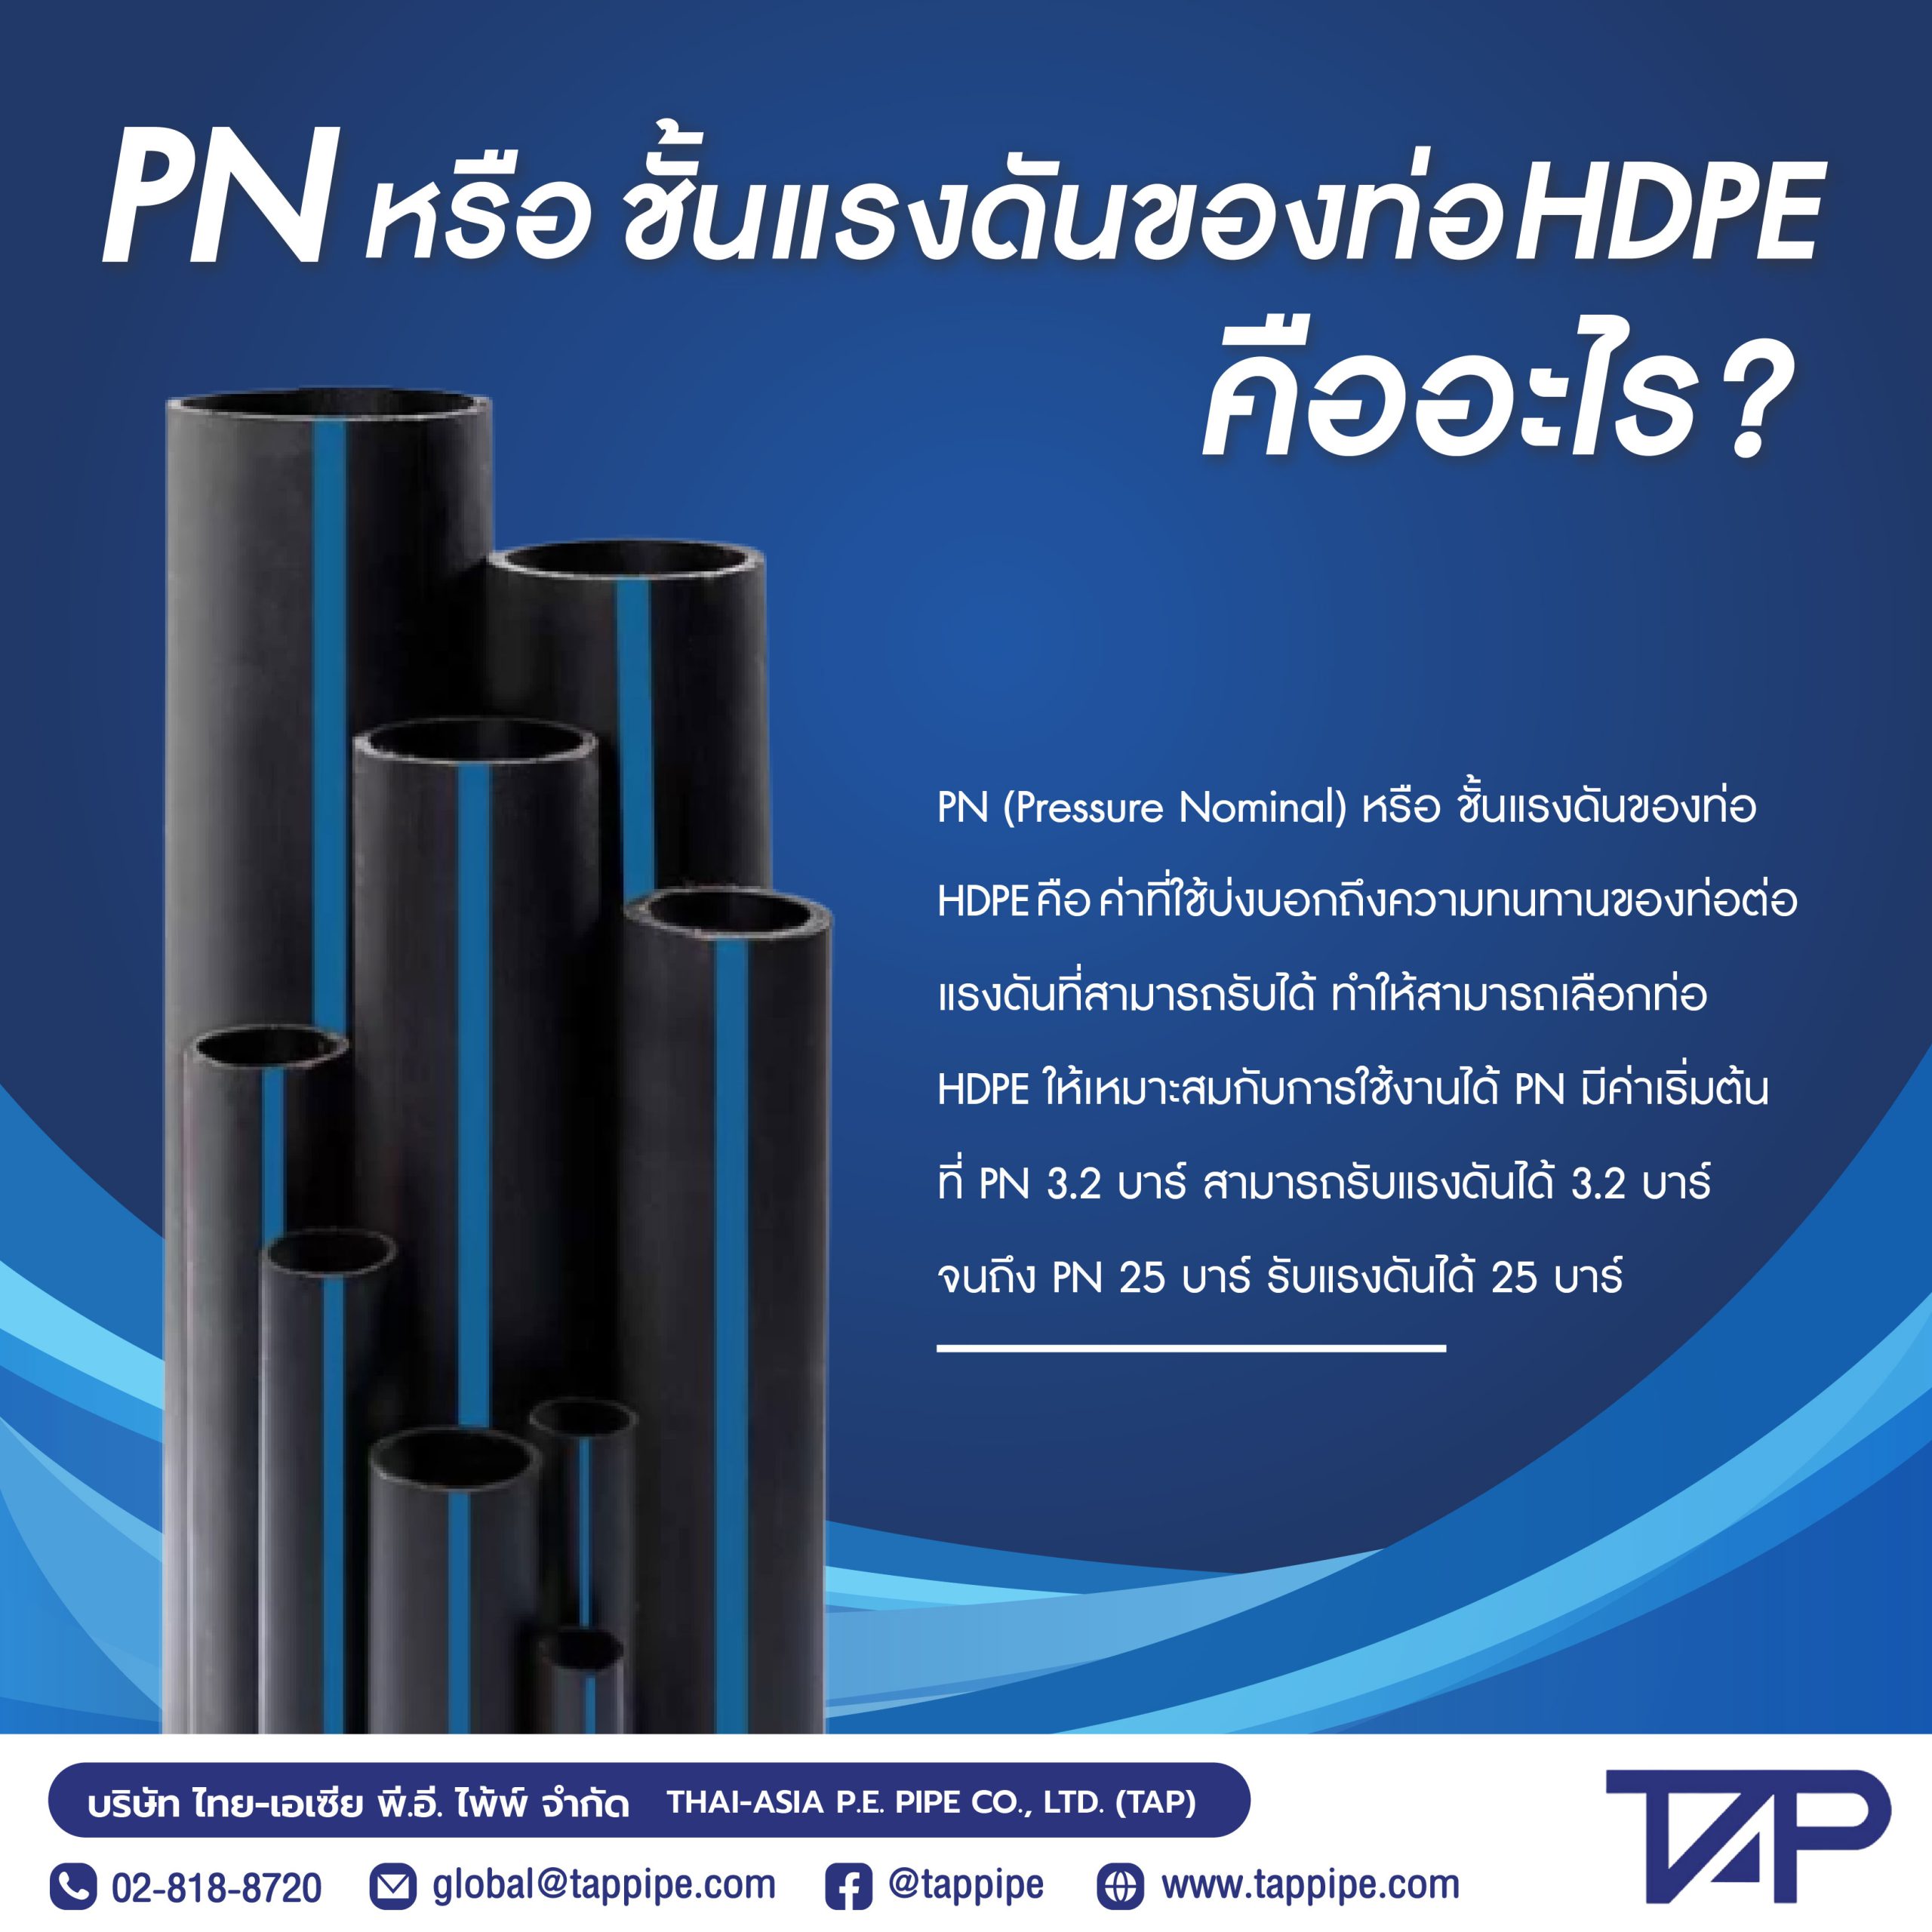 PN หรือ ชั้นแรงดันของท่อ HDPE คืออะไร?